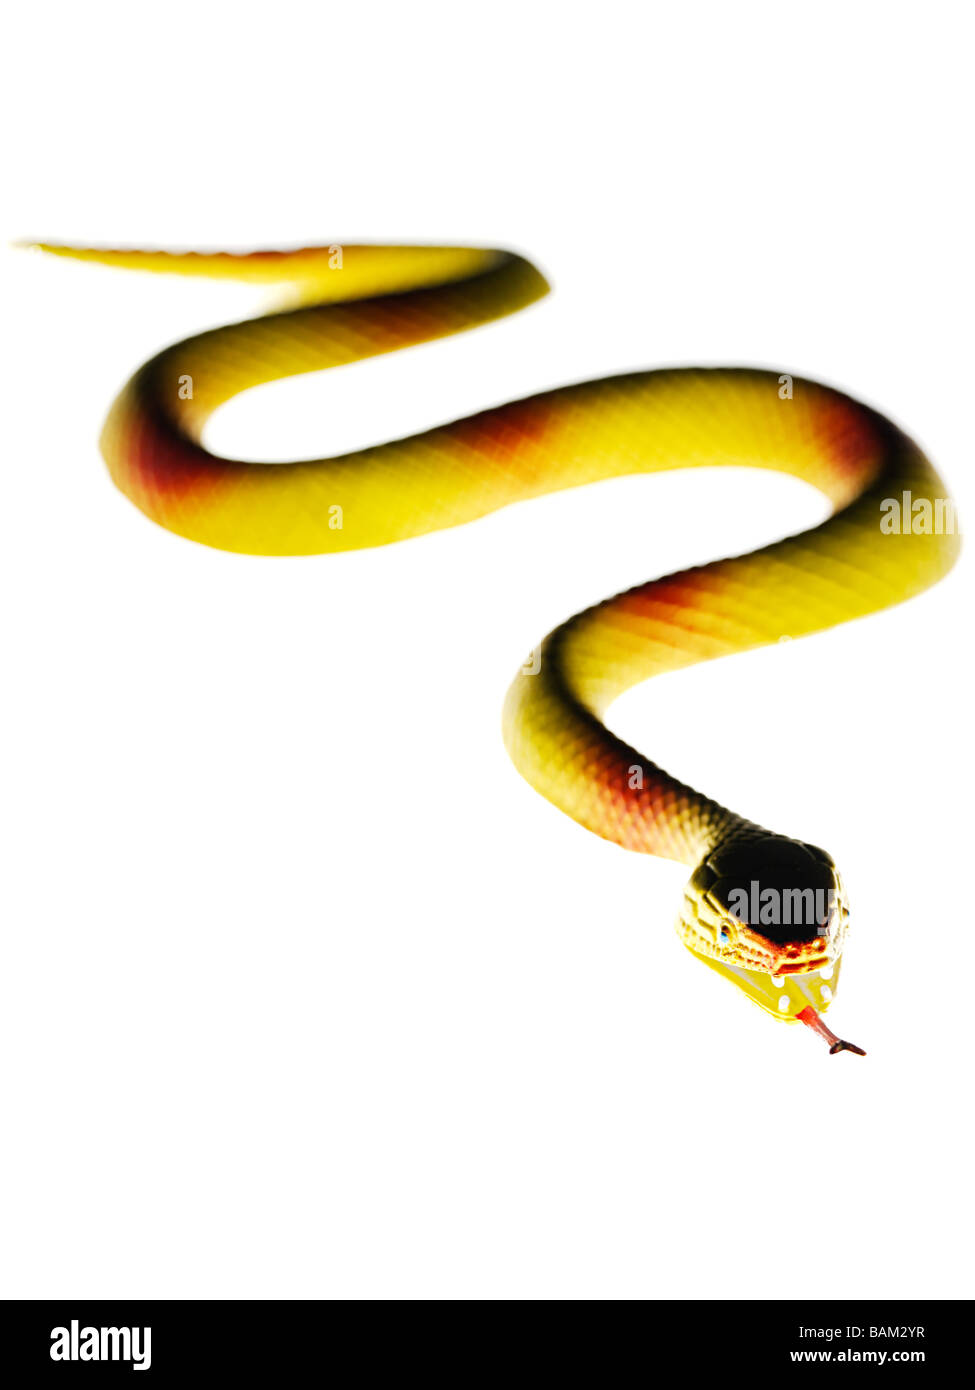 Serpiente de juguete Foto de stock